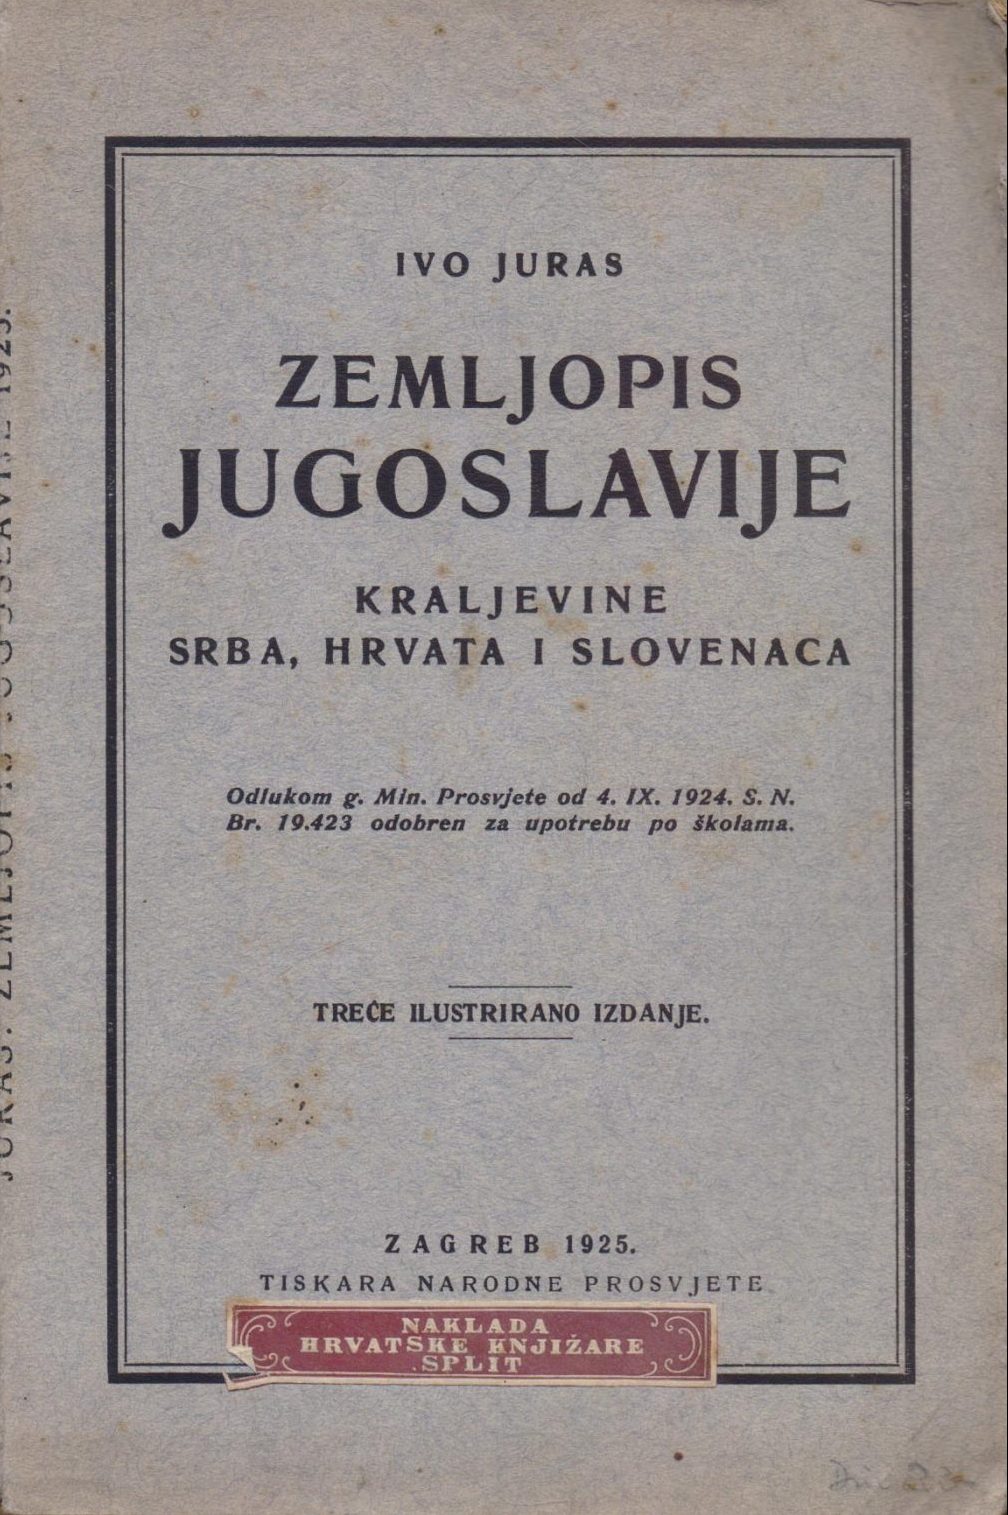 Zemljopis Jugoslavije Ivo juras